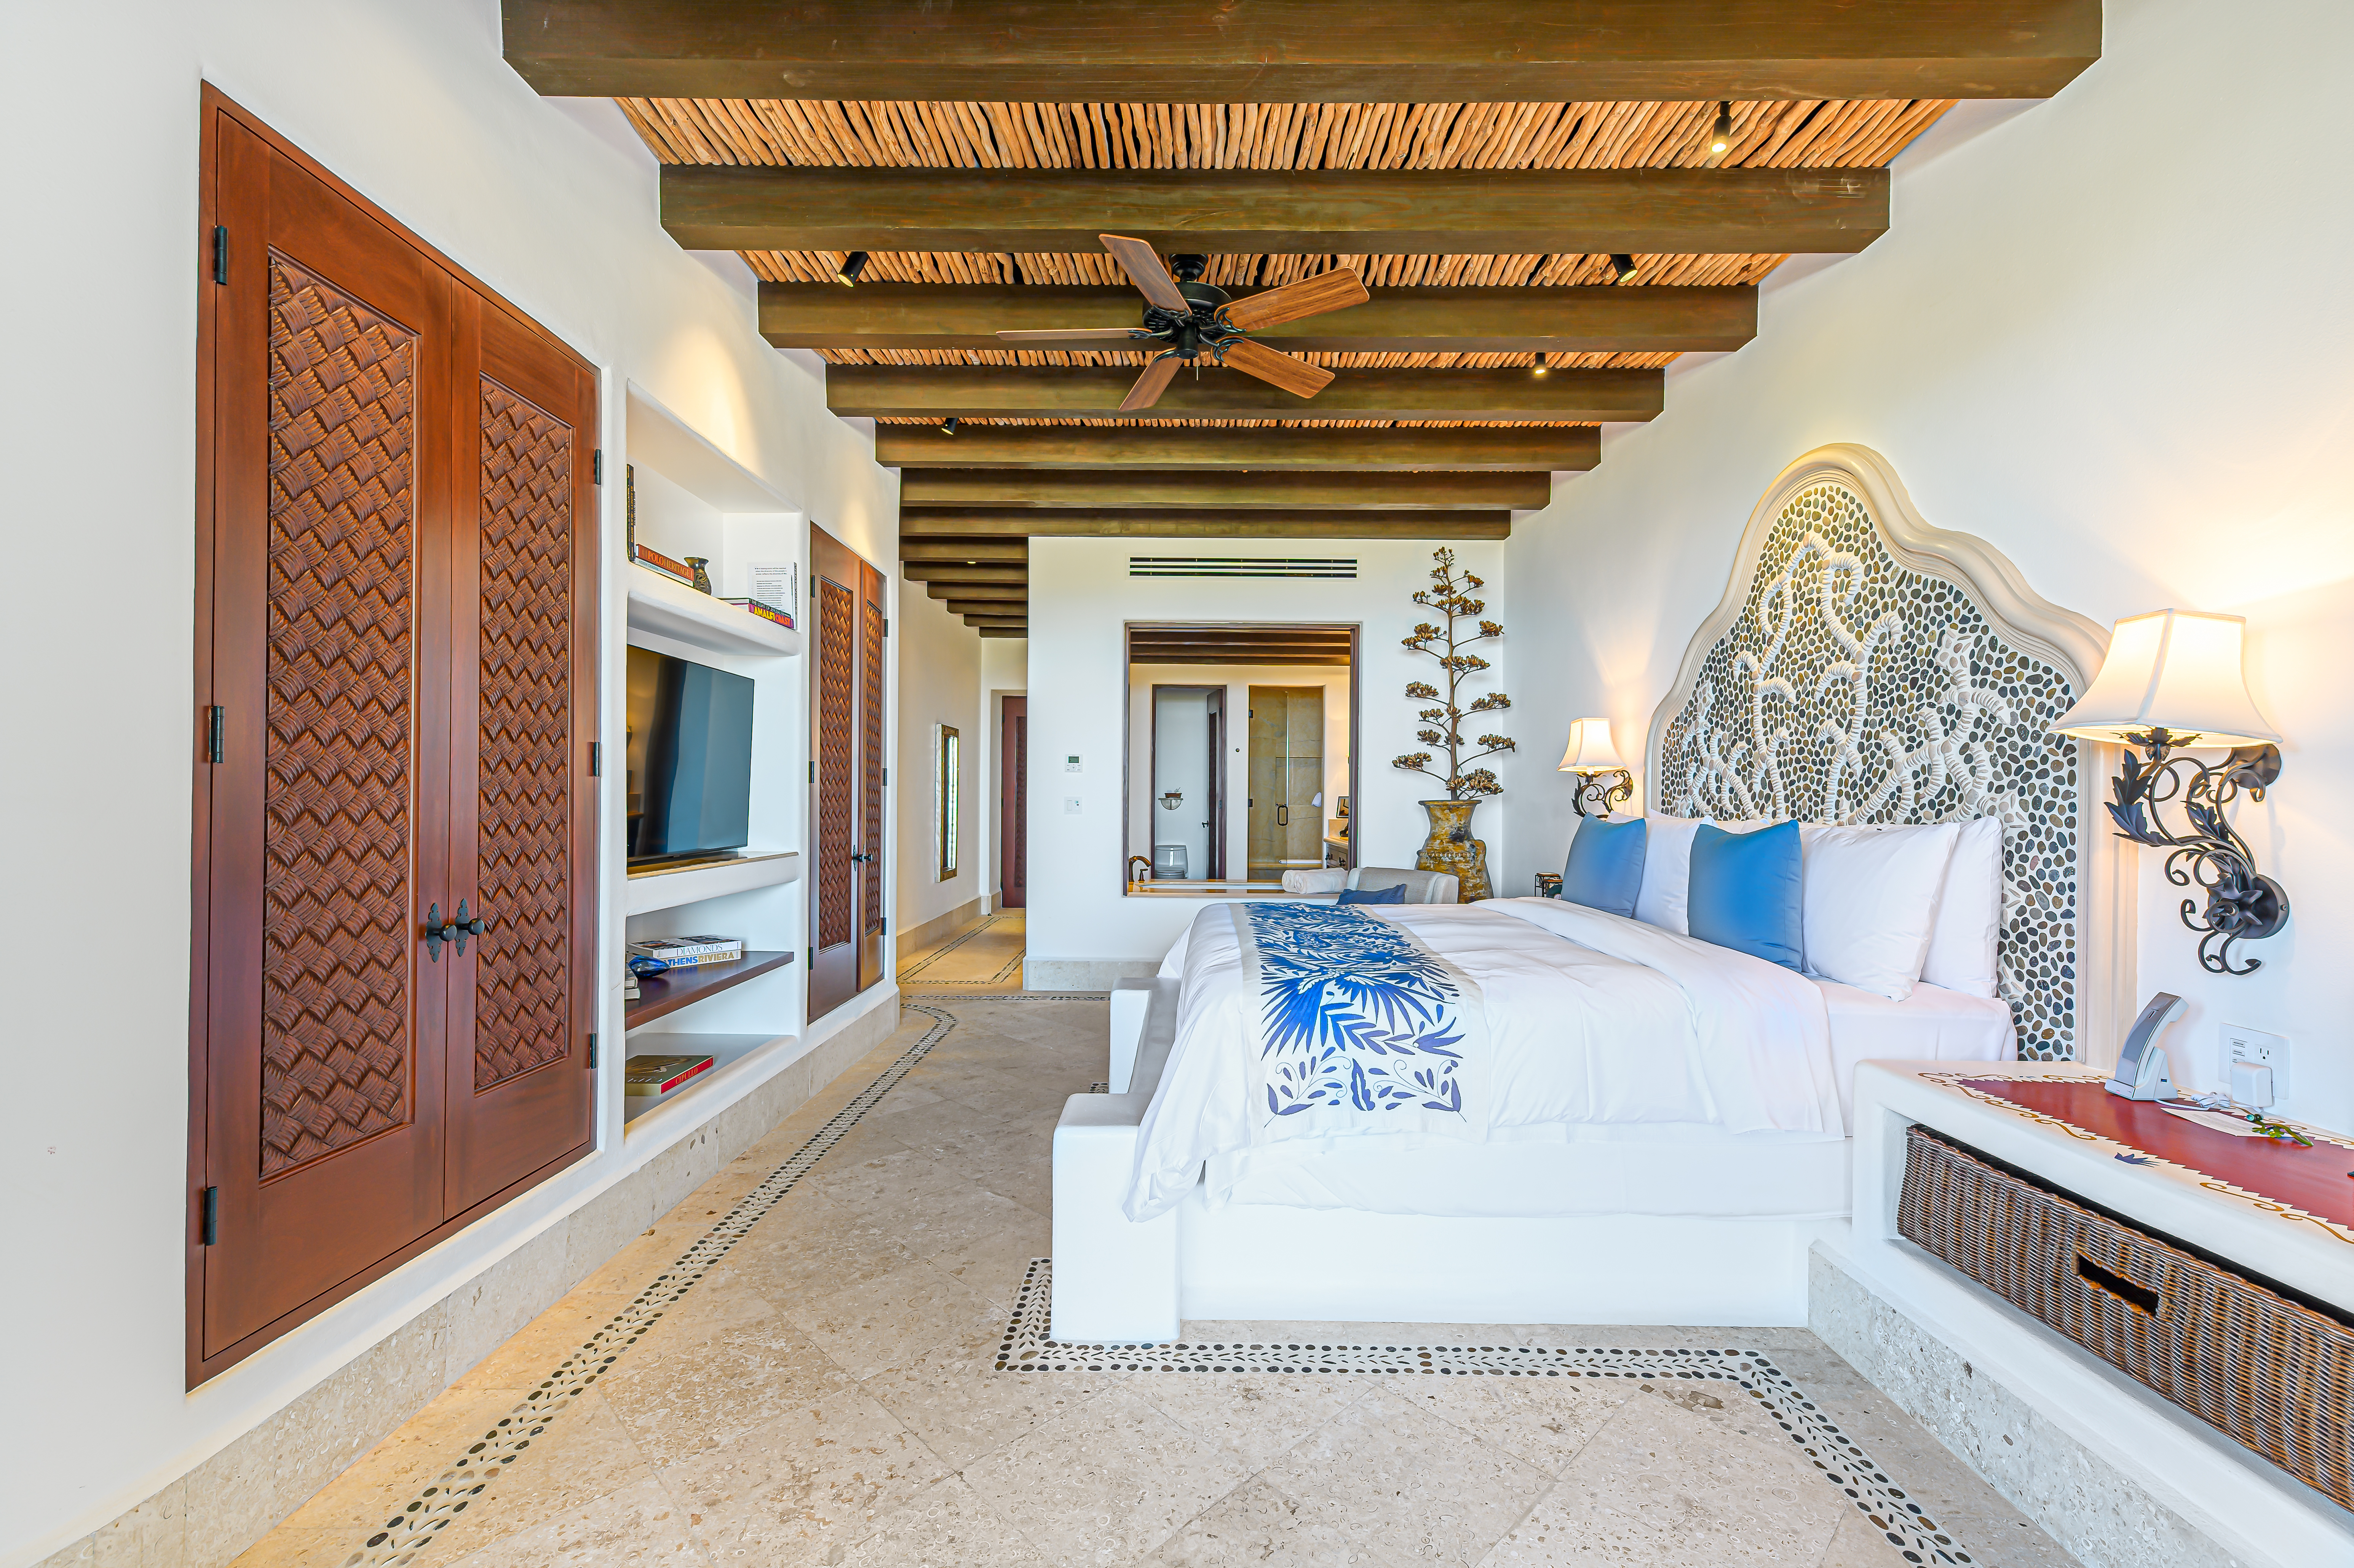 3 Bedrooms Villa in Cabo Corridor